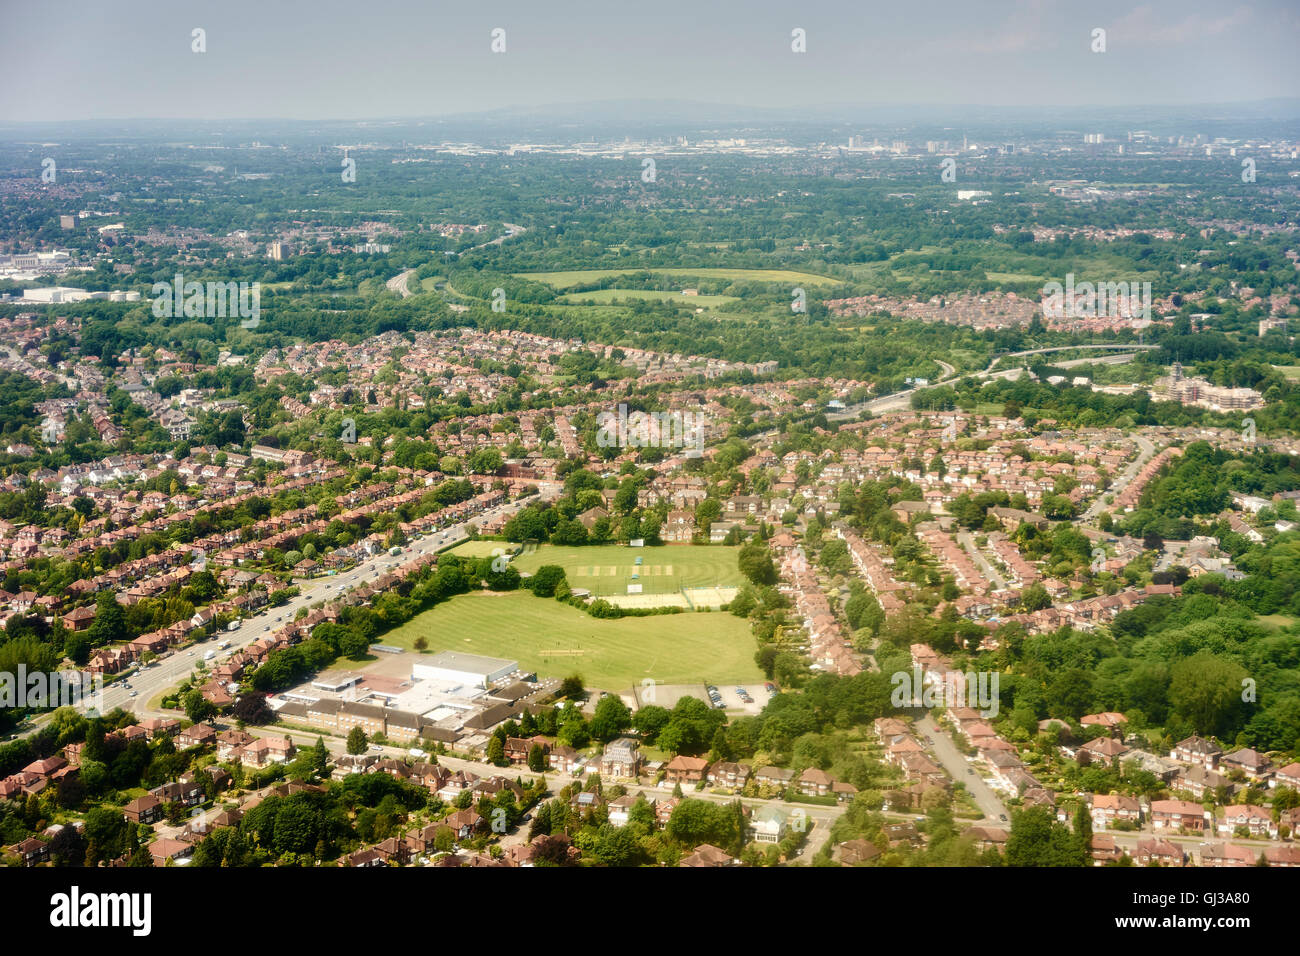 Vue aérienne du terrain de cricket de banlieue, Manchester, UK Banque D'Images